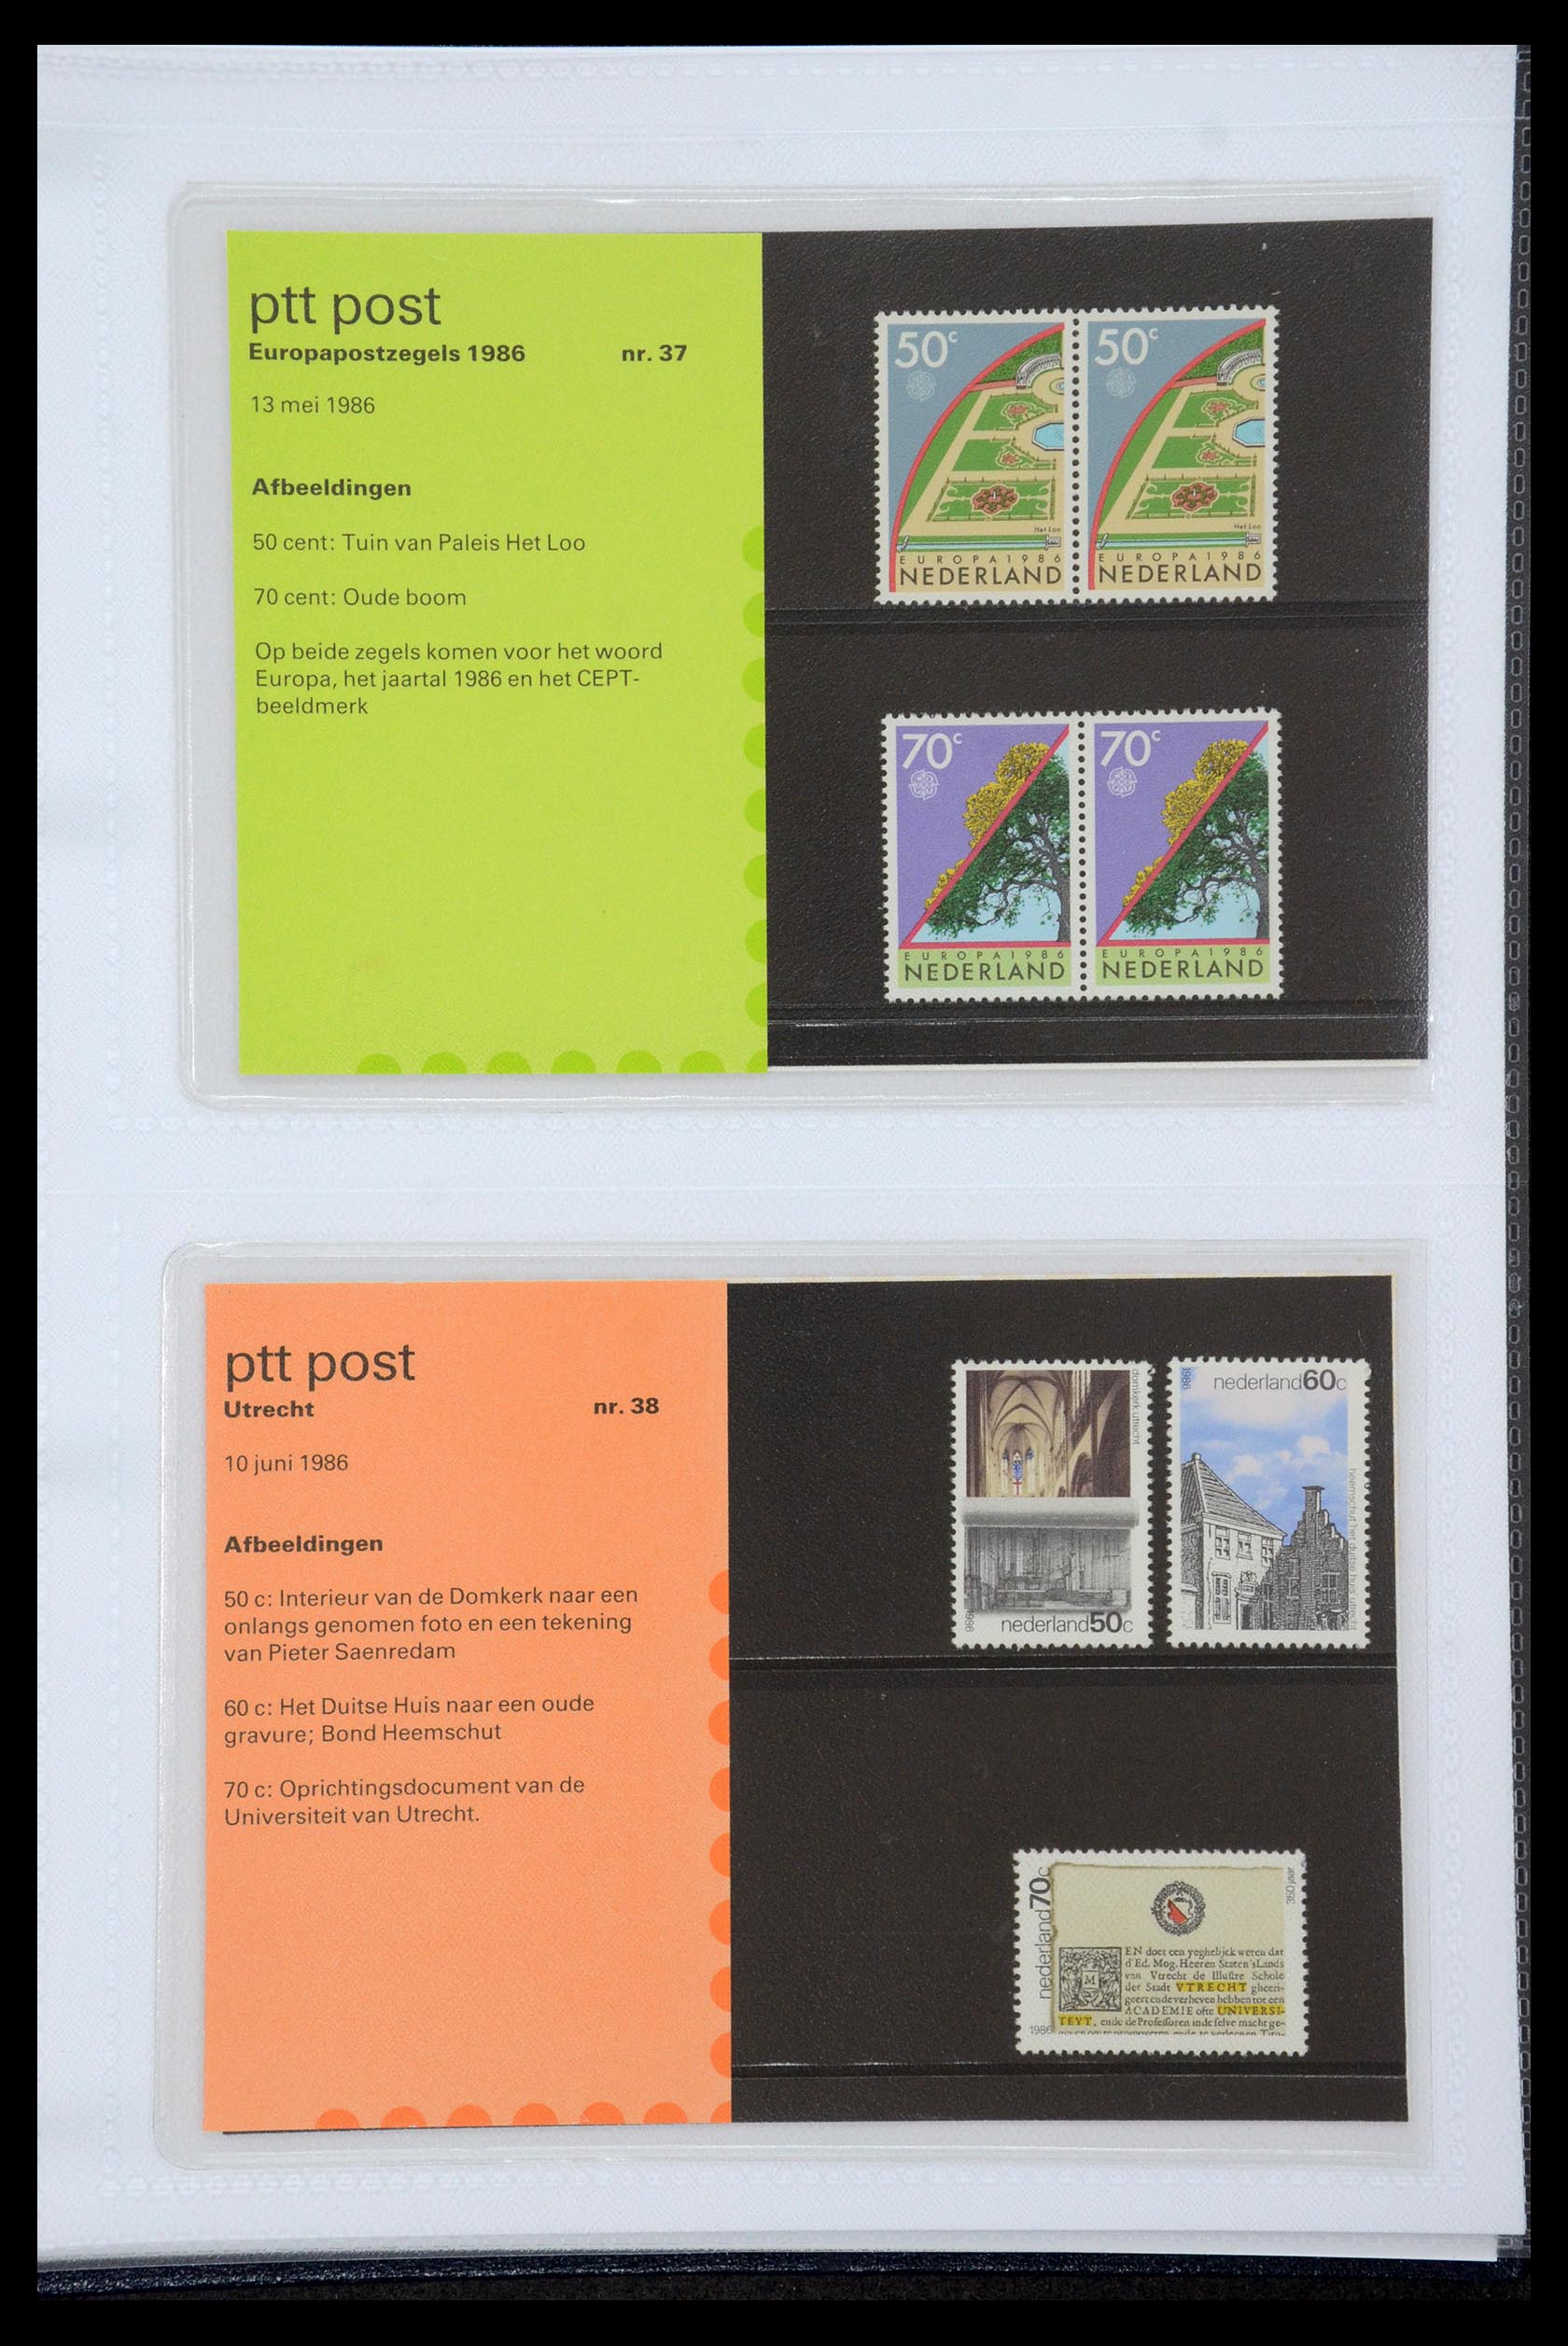 35947 019 - Stamp Collection 35947 Netherlands PTT presentation packs 1982-2019!